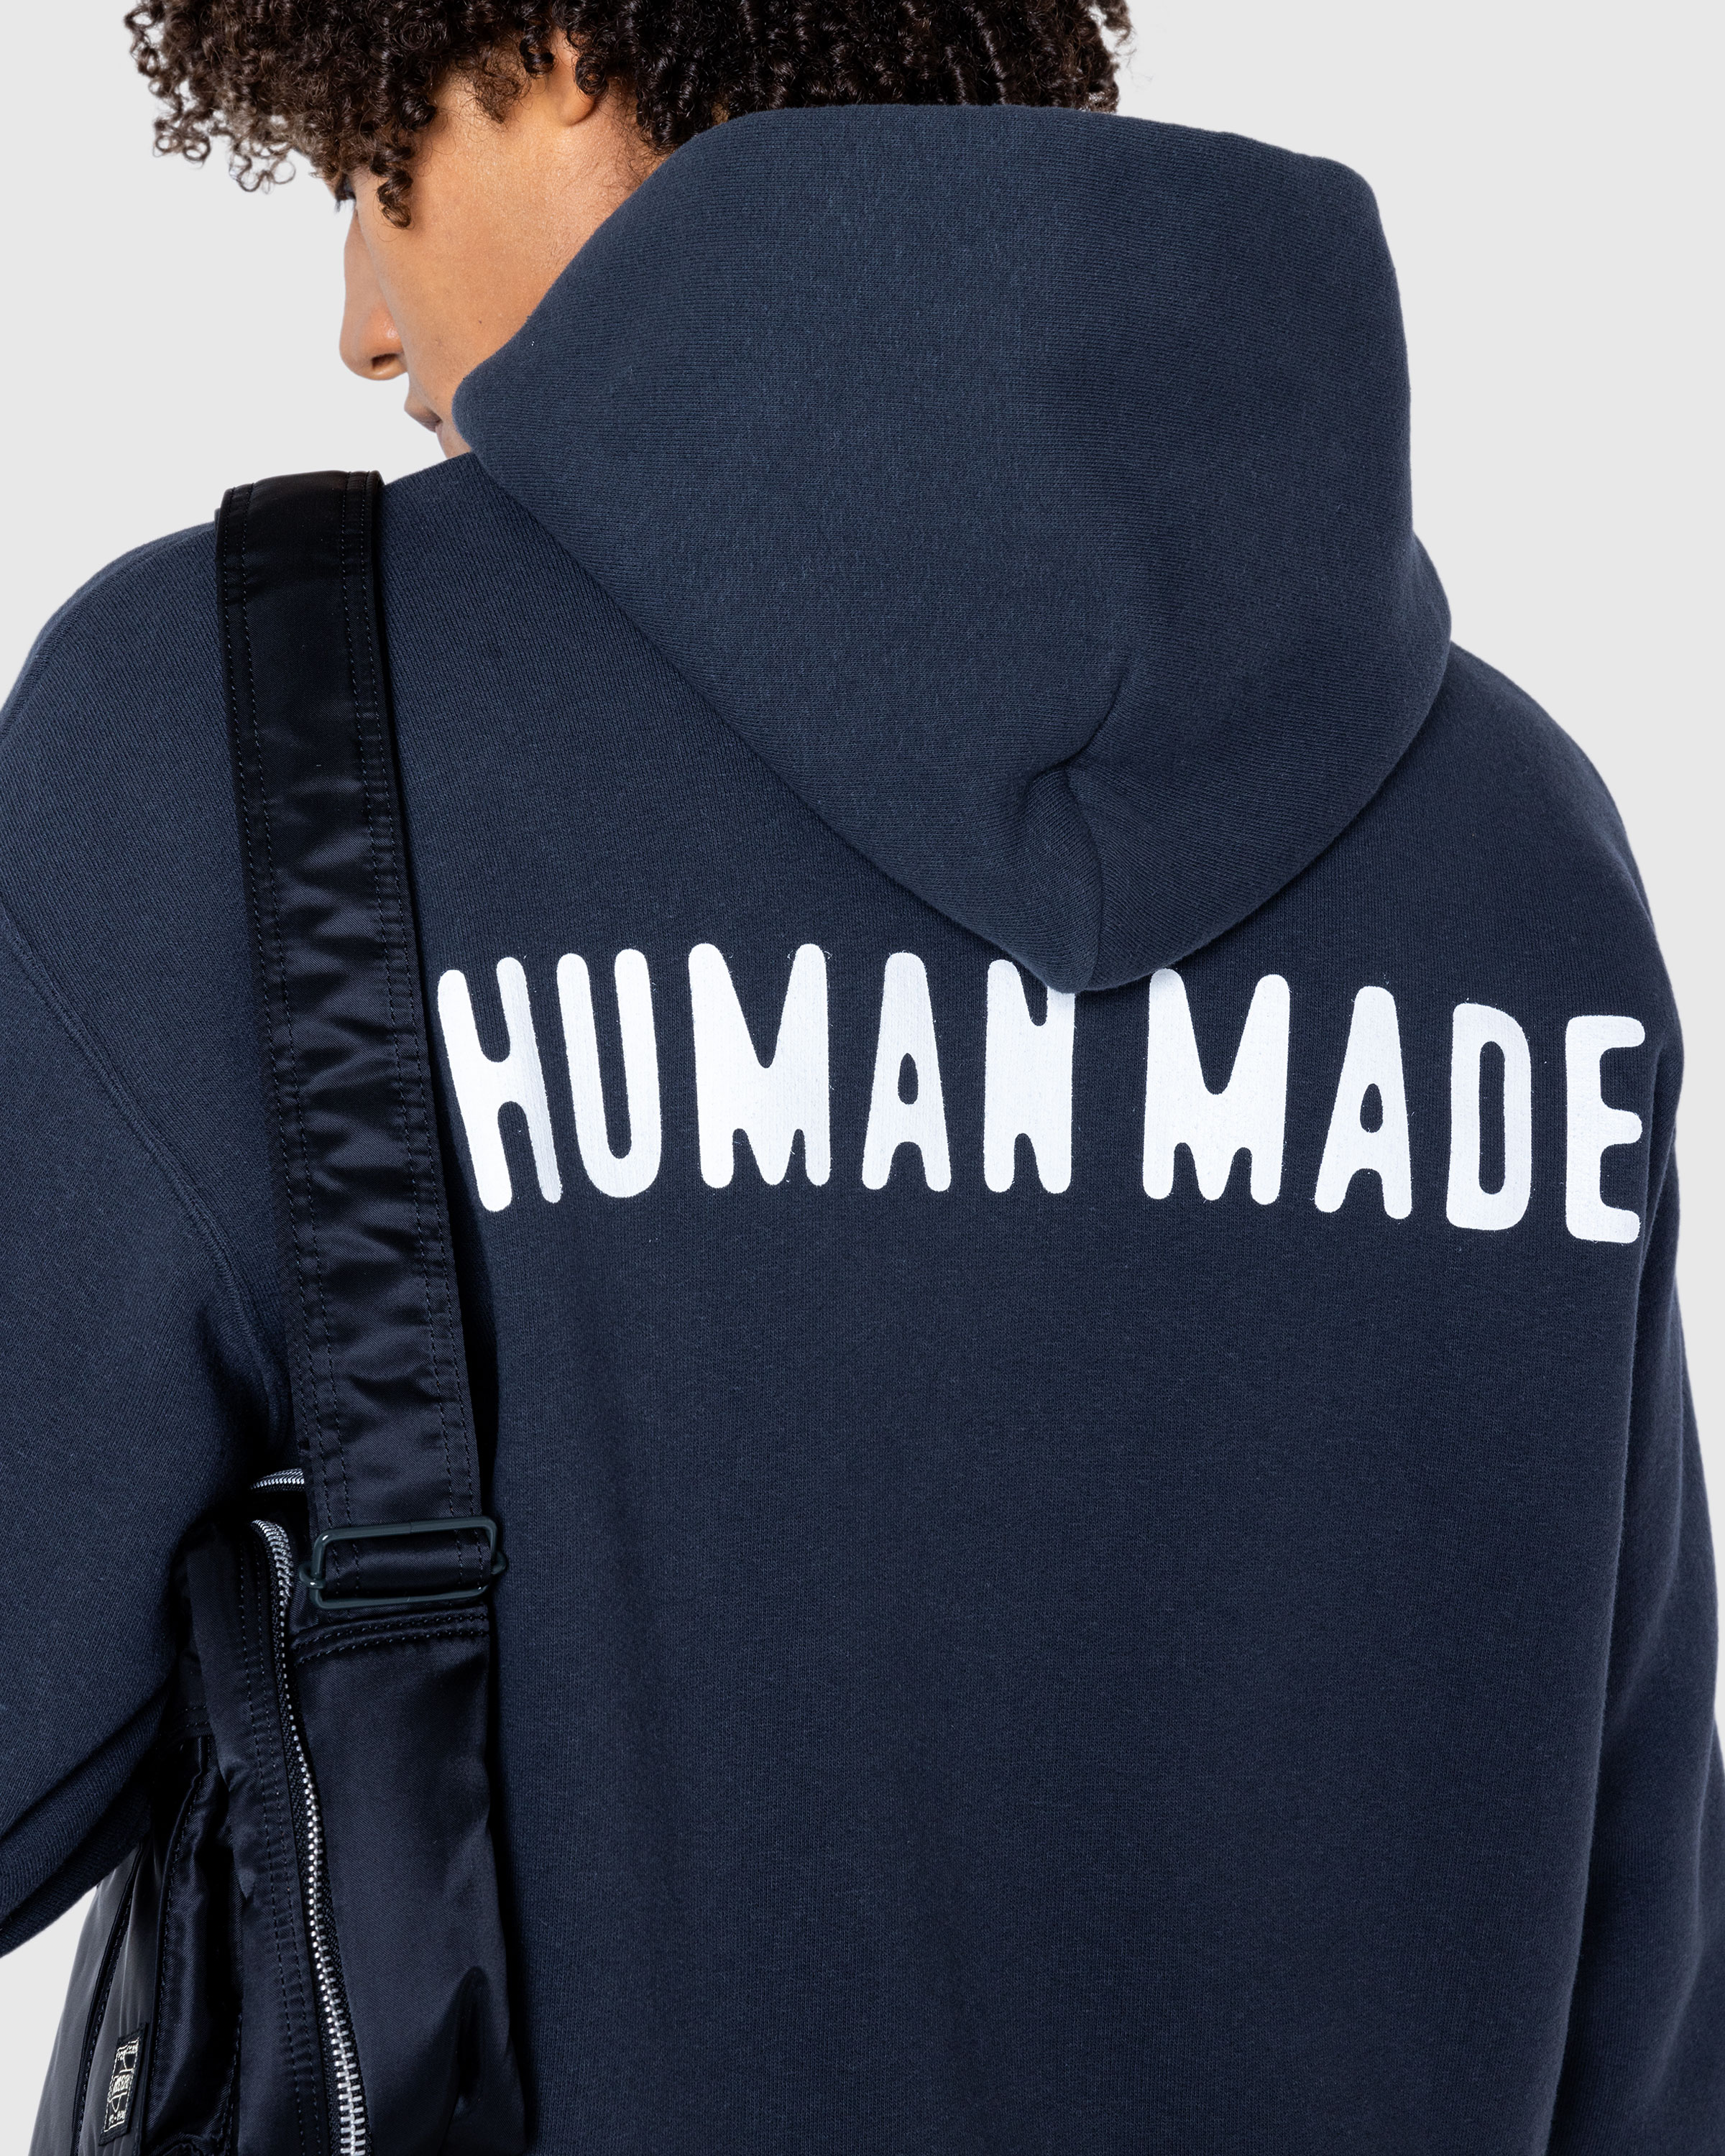 Human Made – Zip-Up Hoodie Black - Zip-Up Sweats - Black - Image 5